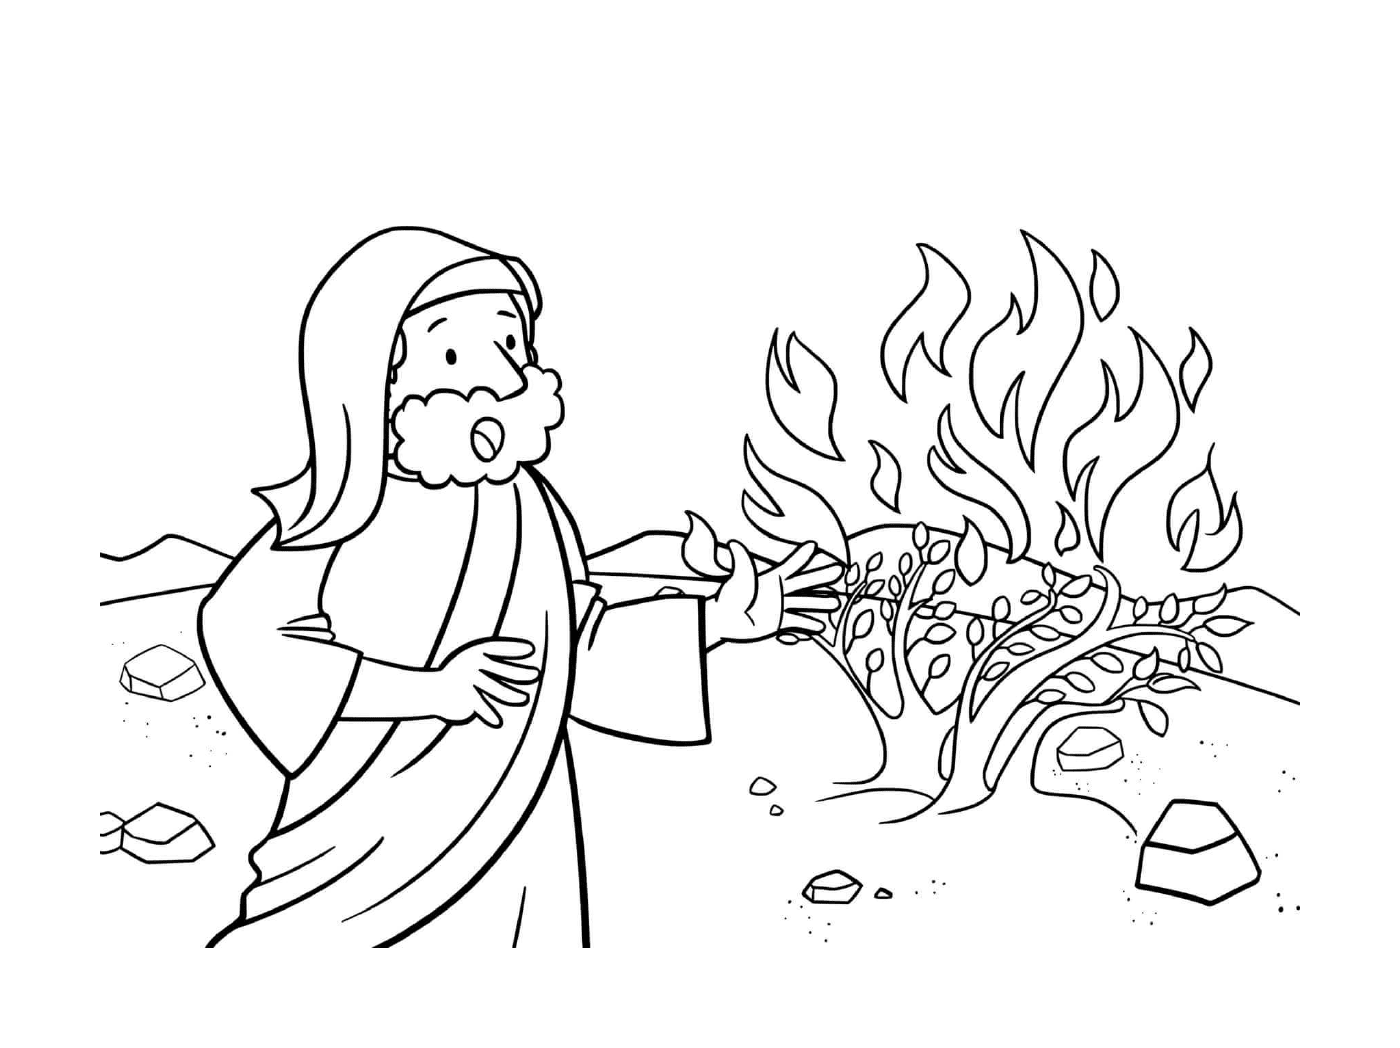  Mensch, der einen Baum brennt 